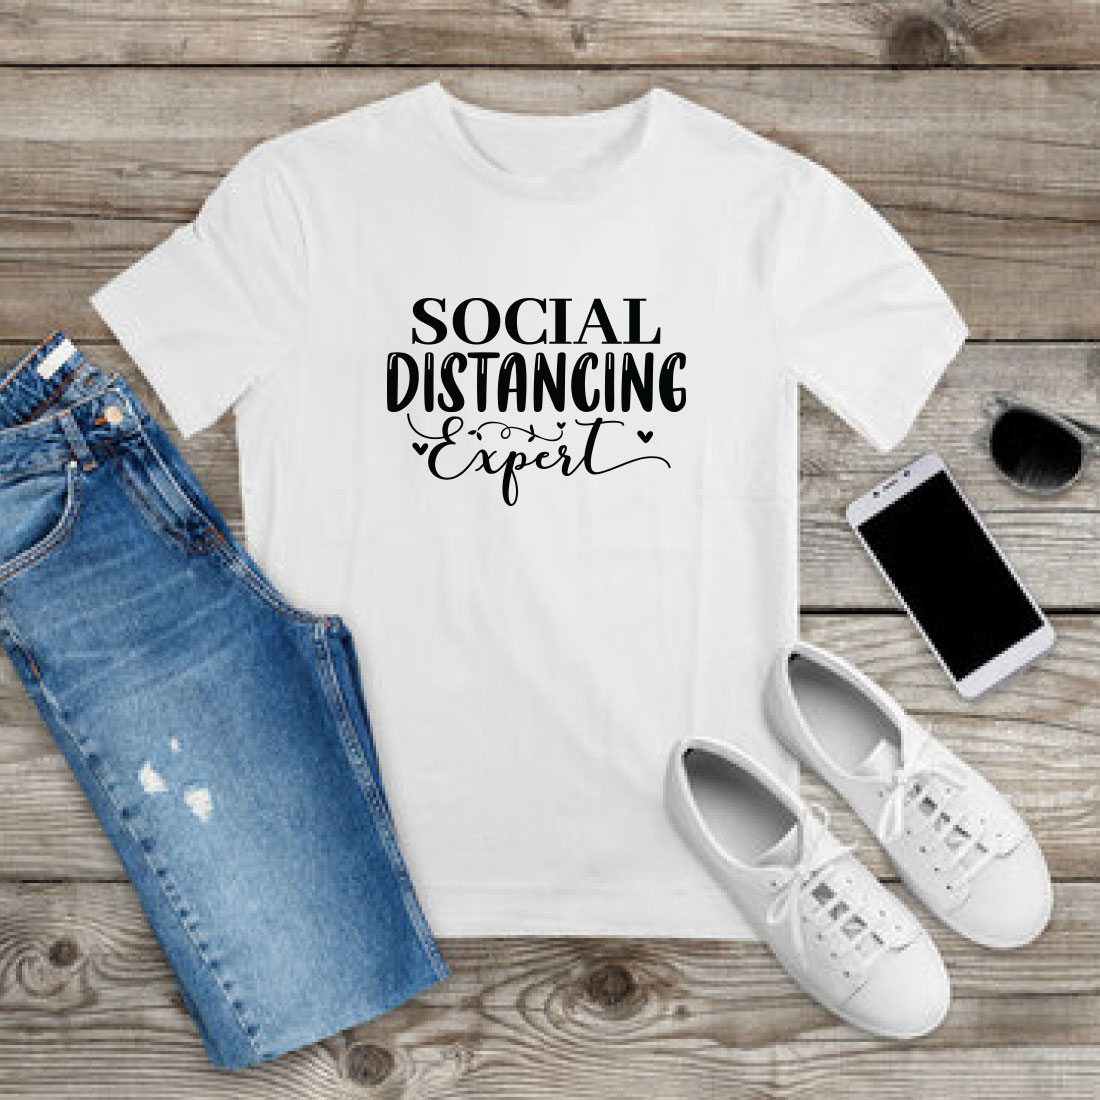 Antisocial T-shirt Design Bundle Vol-6 preview image.